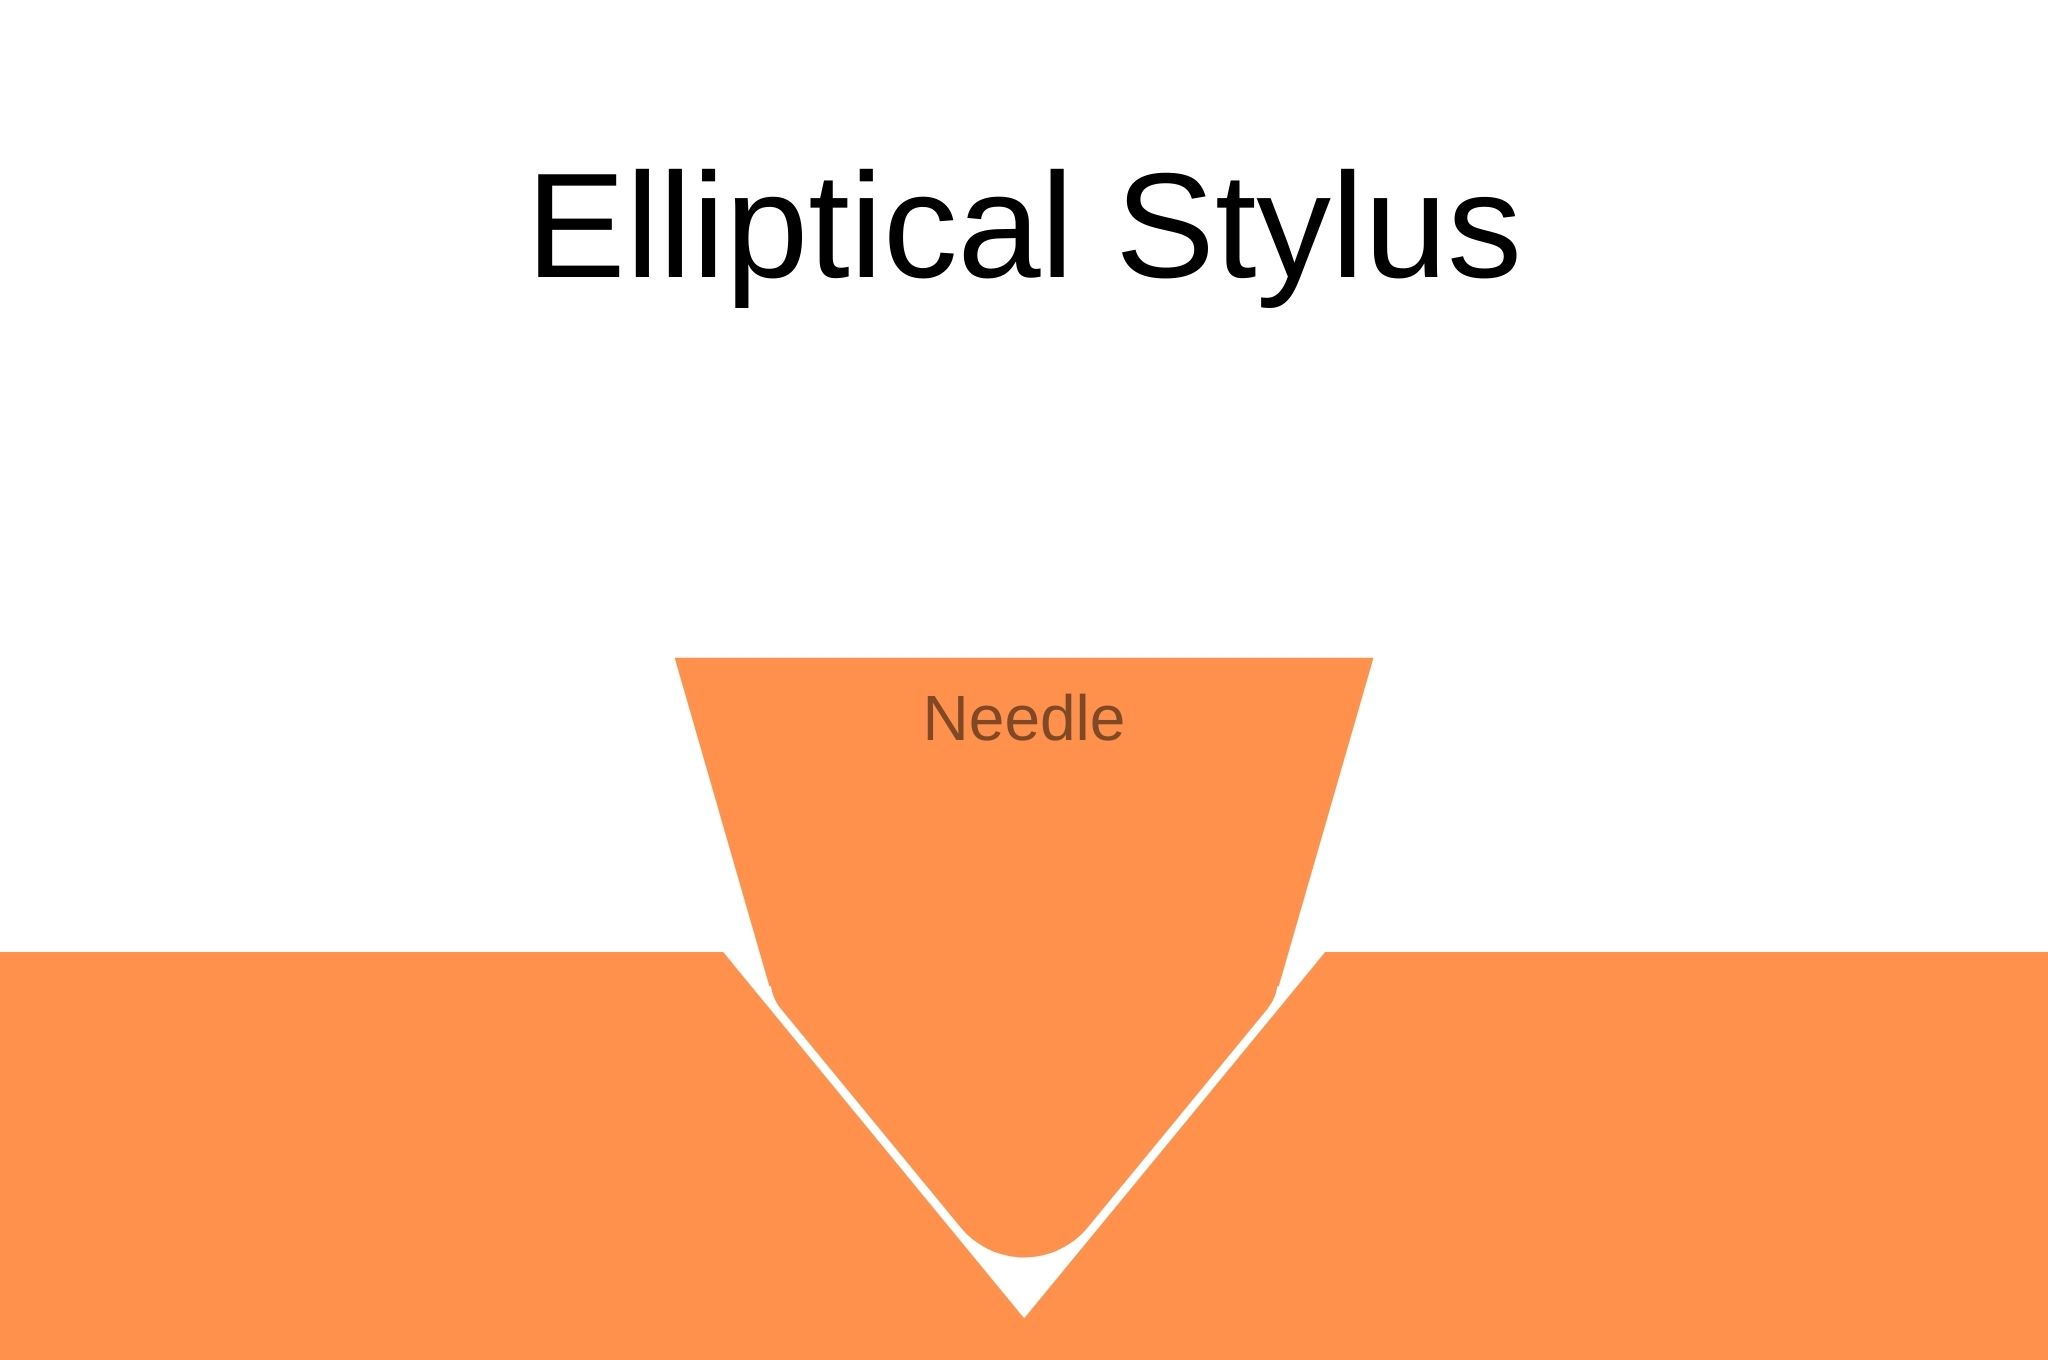 Elliptical stylus